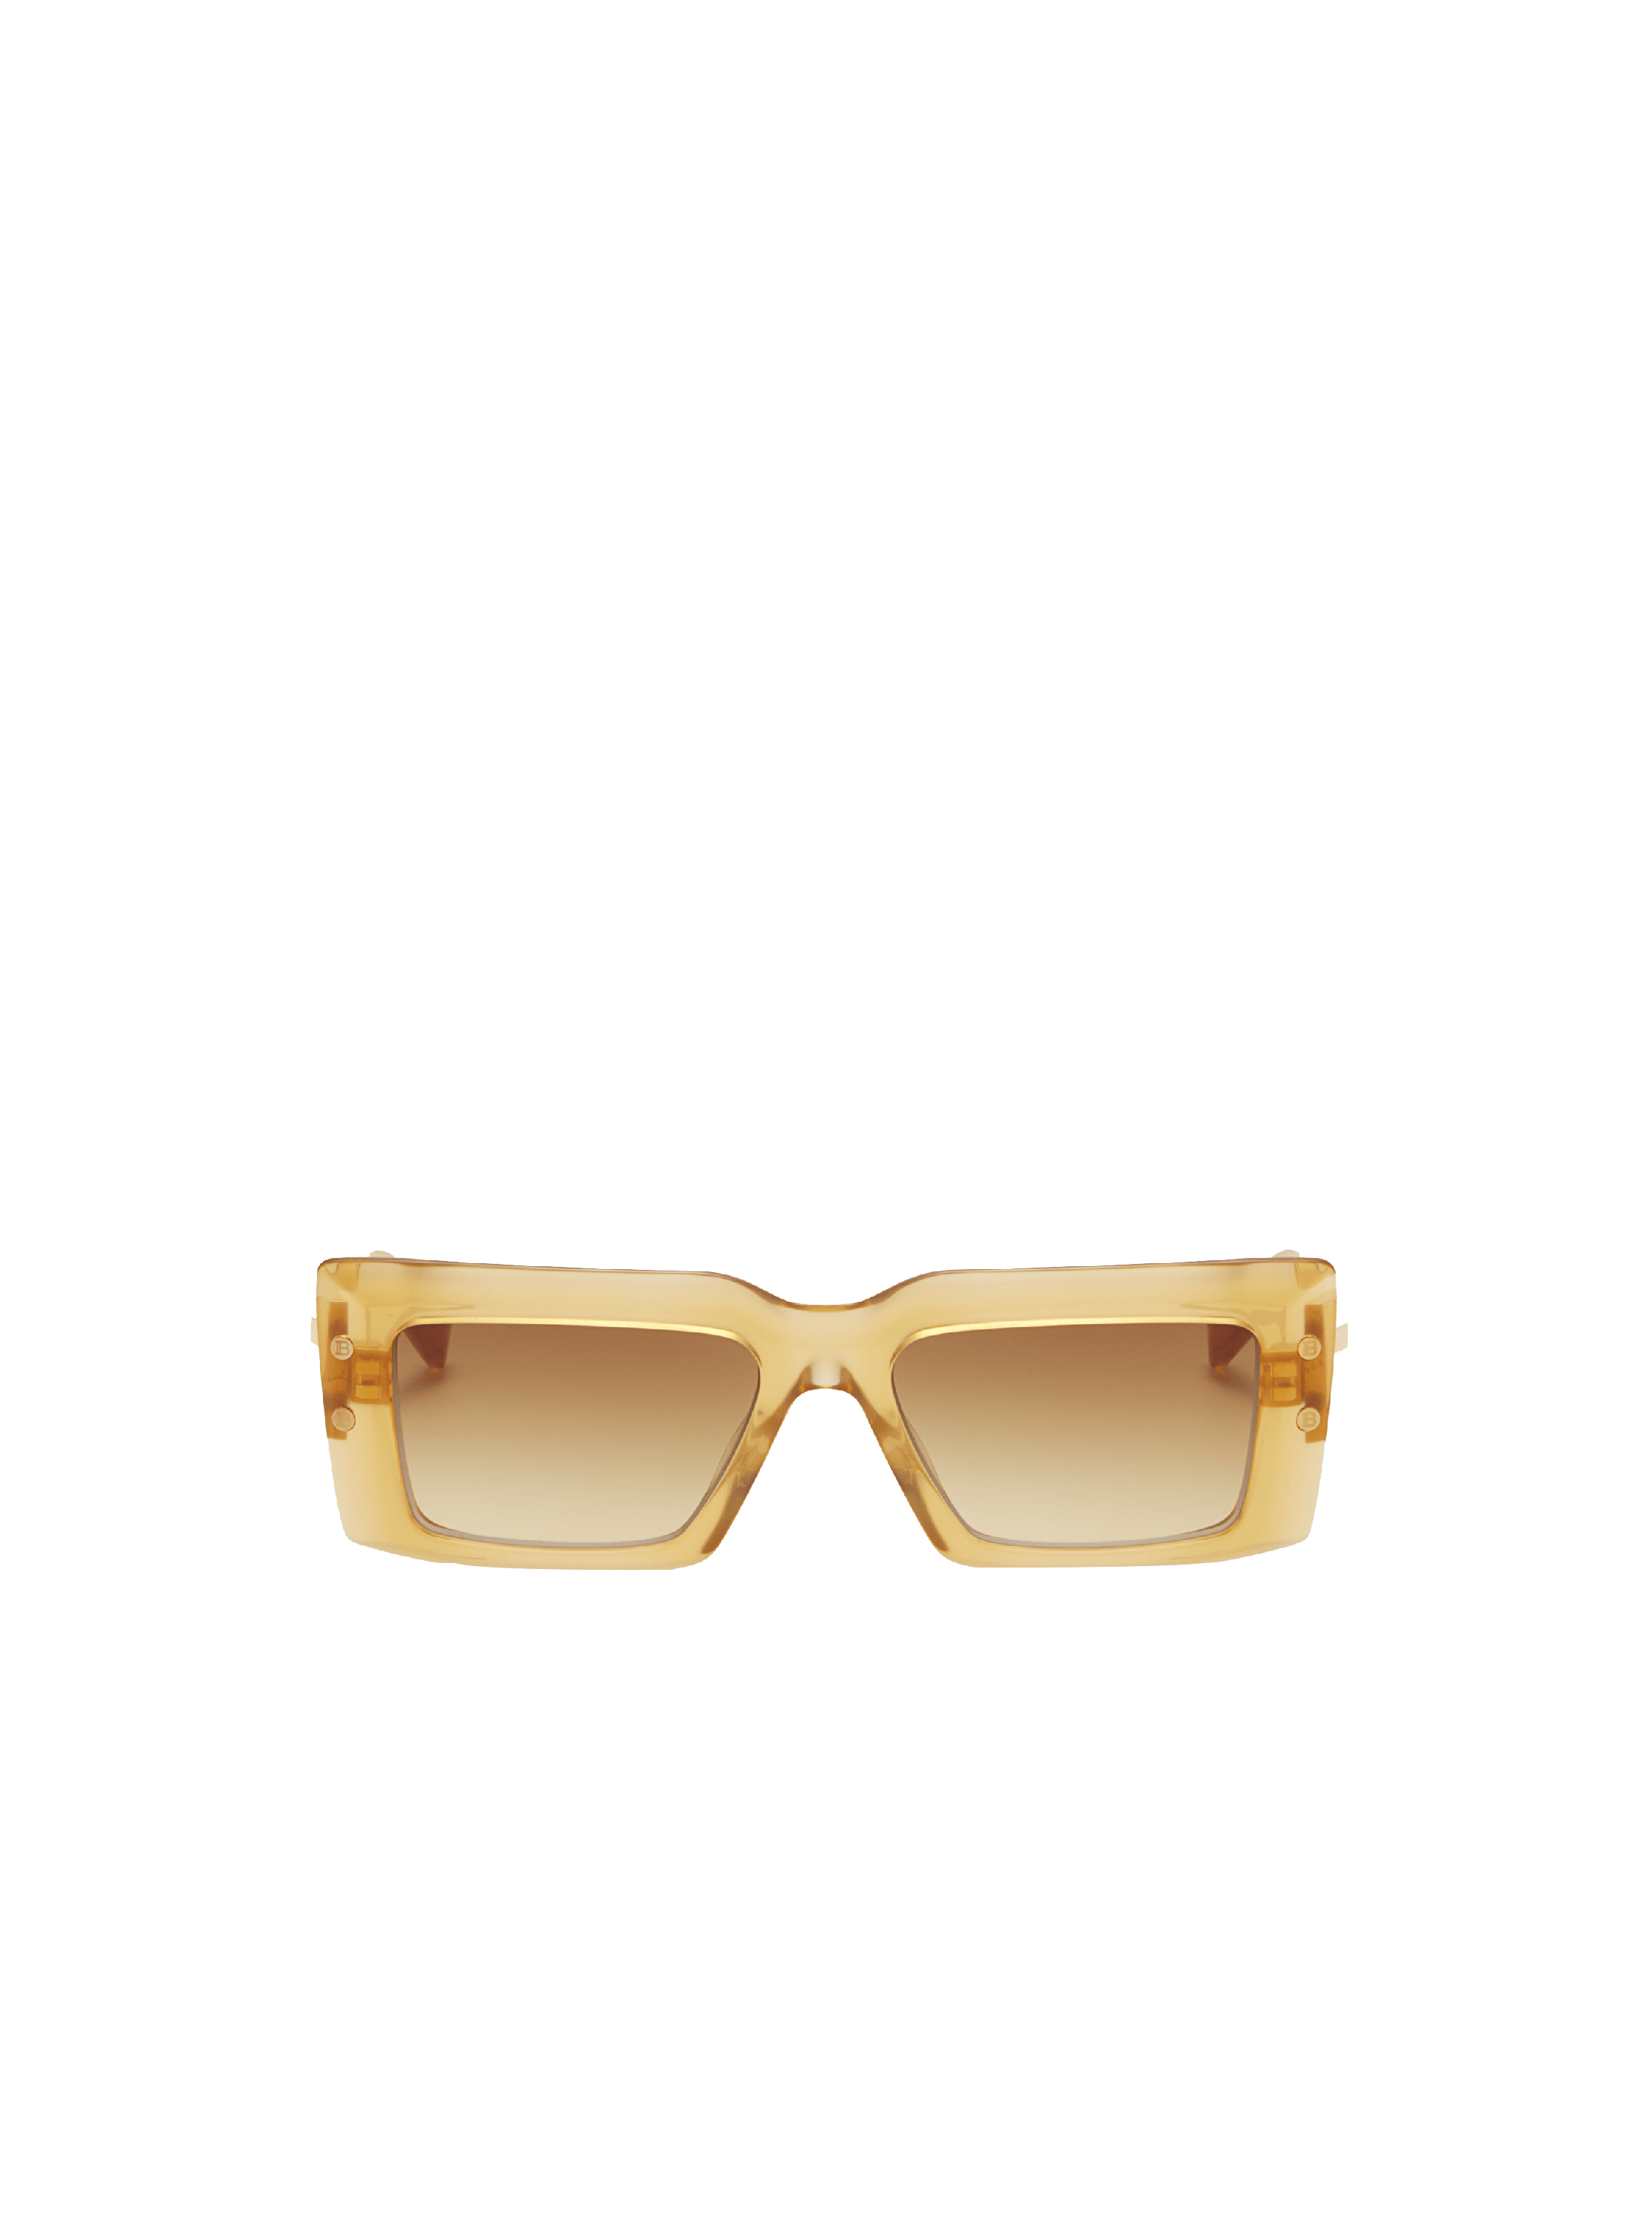 louis vuitton sunglasses 2020